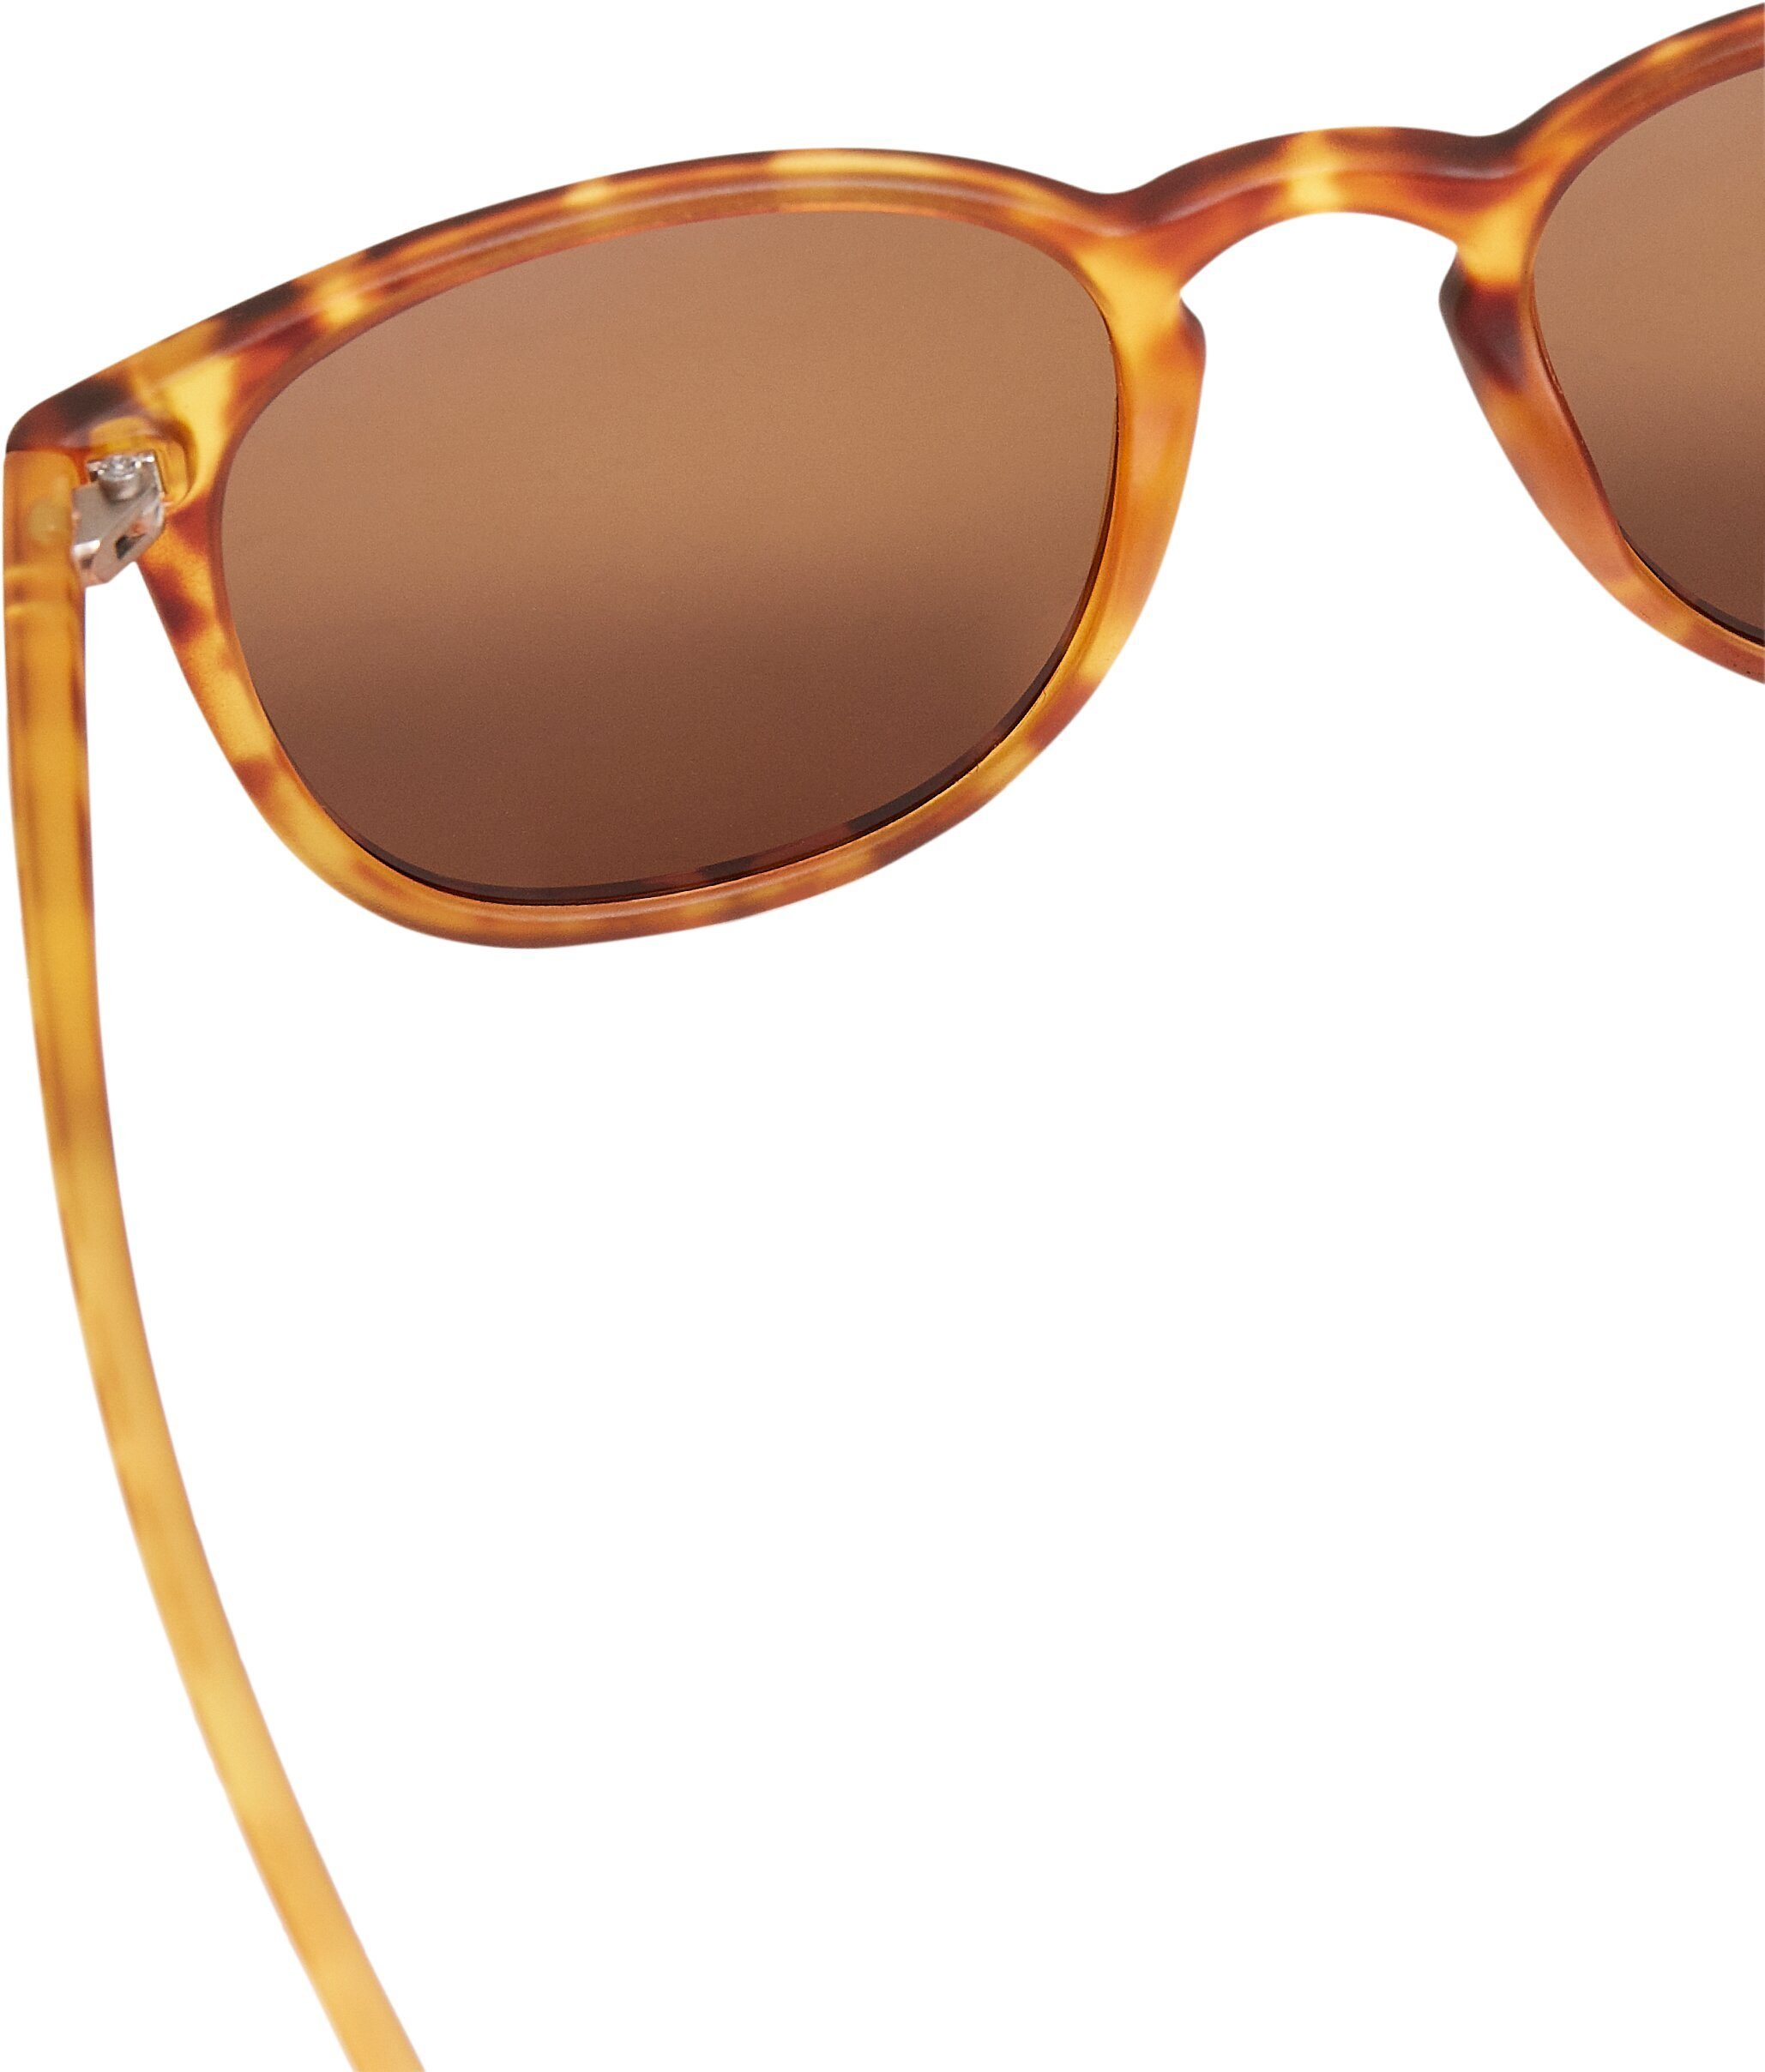 URBAN CLASSICS Sonnenbrille Accessoires Sunglasses Arthur UC brown leo/rosé